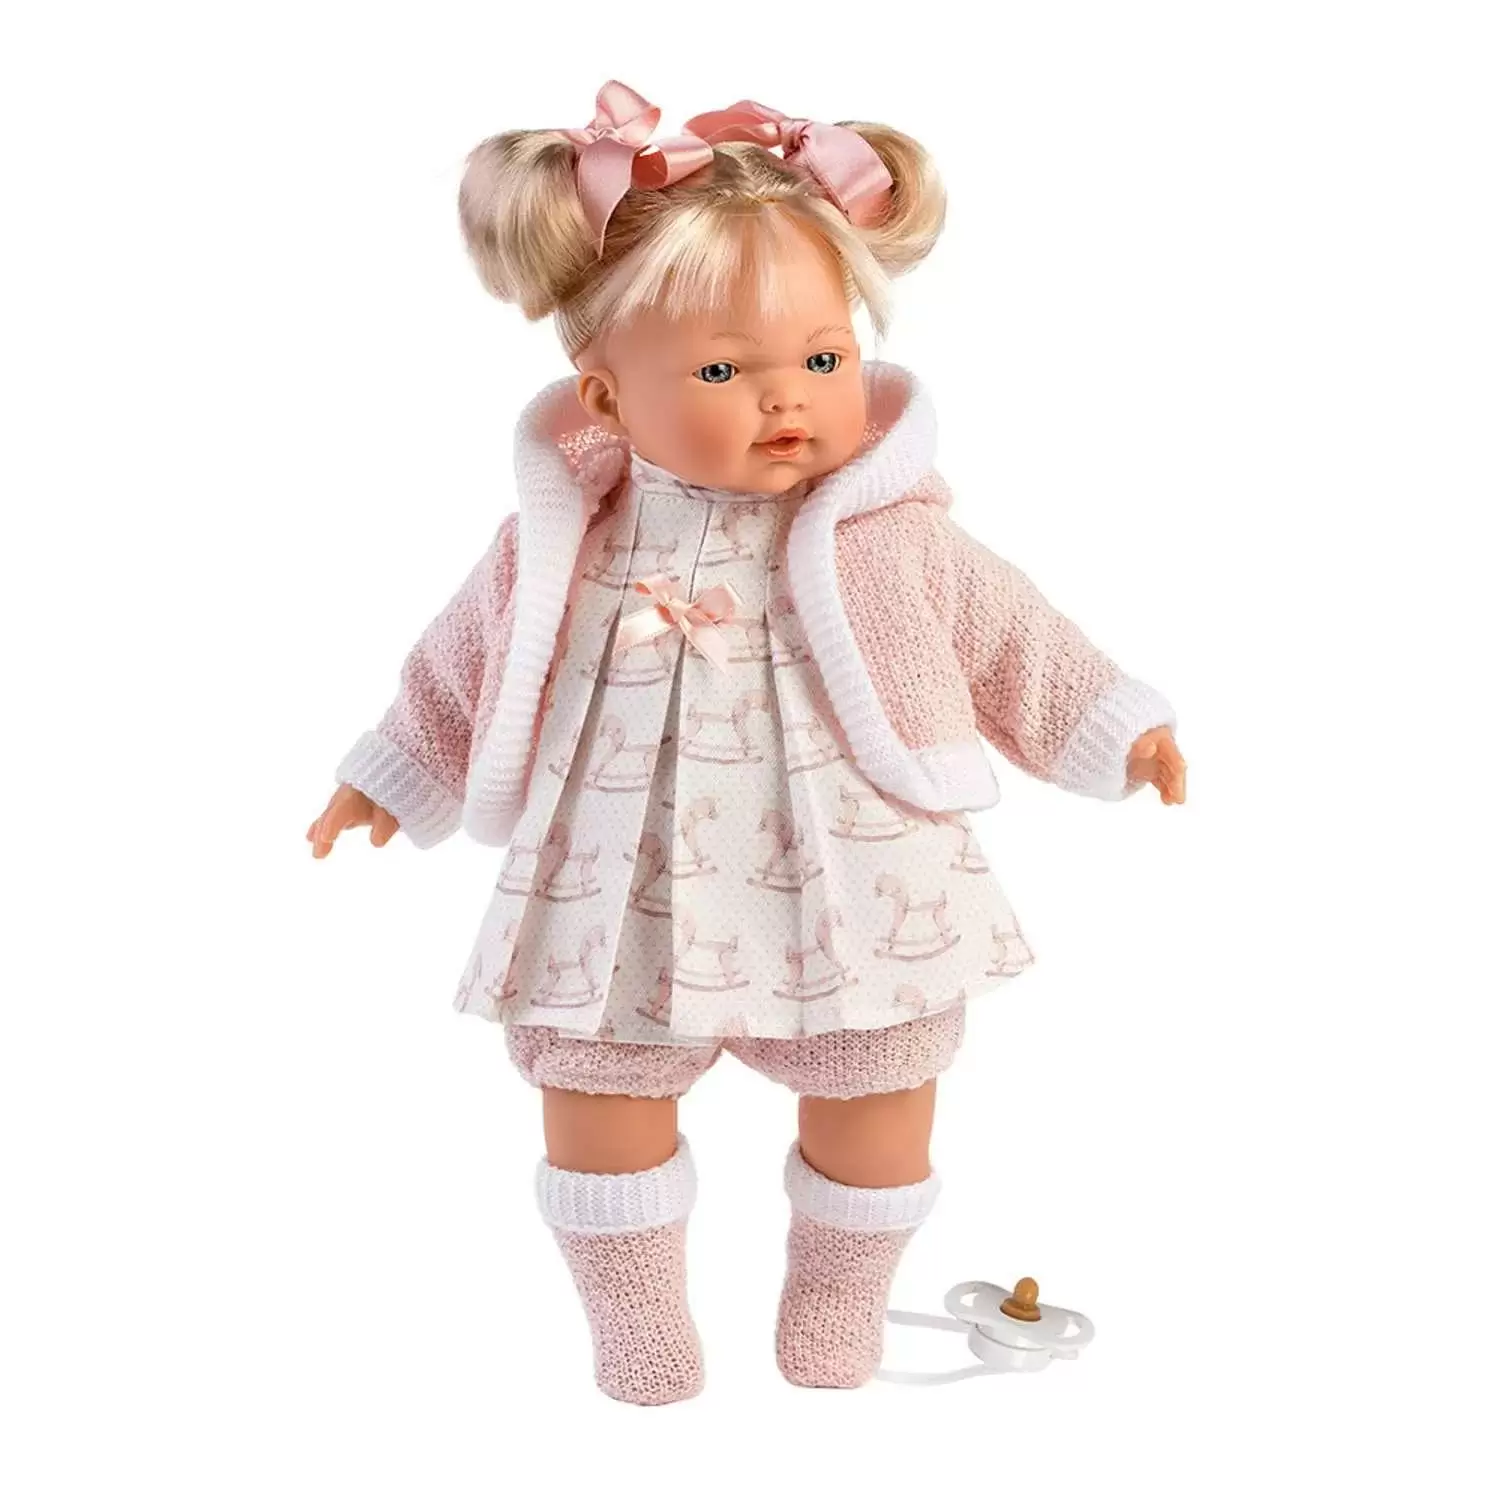 Кукла LLorens Роберта 33см блондинка в розов наряде